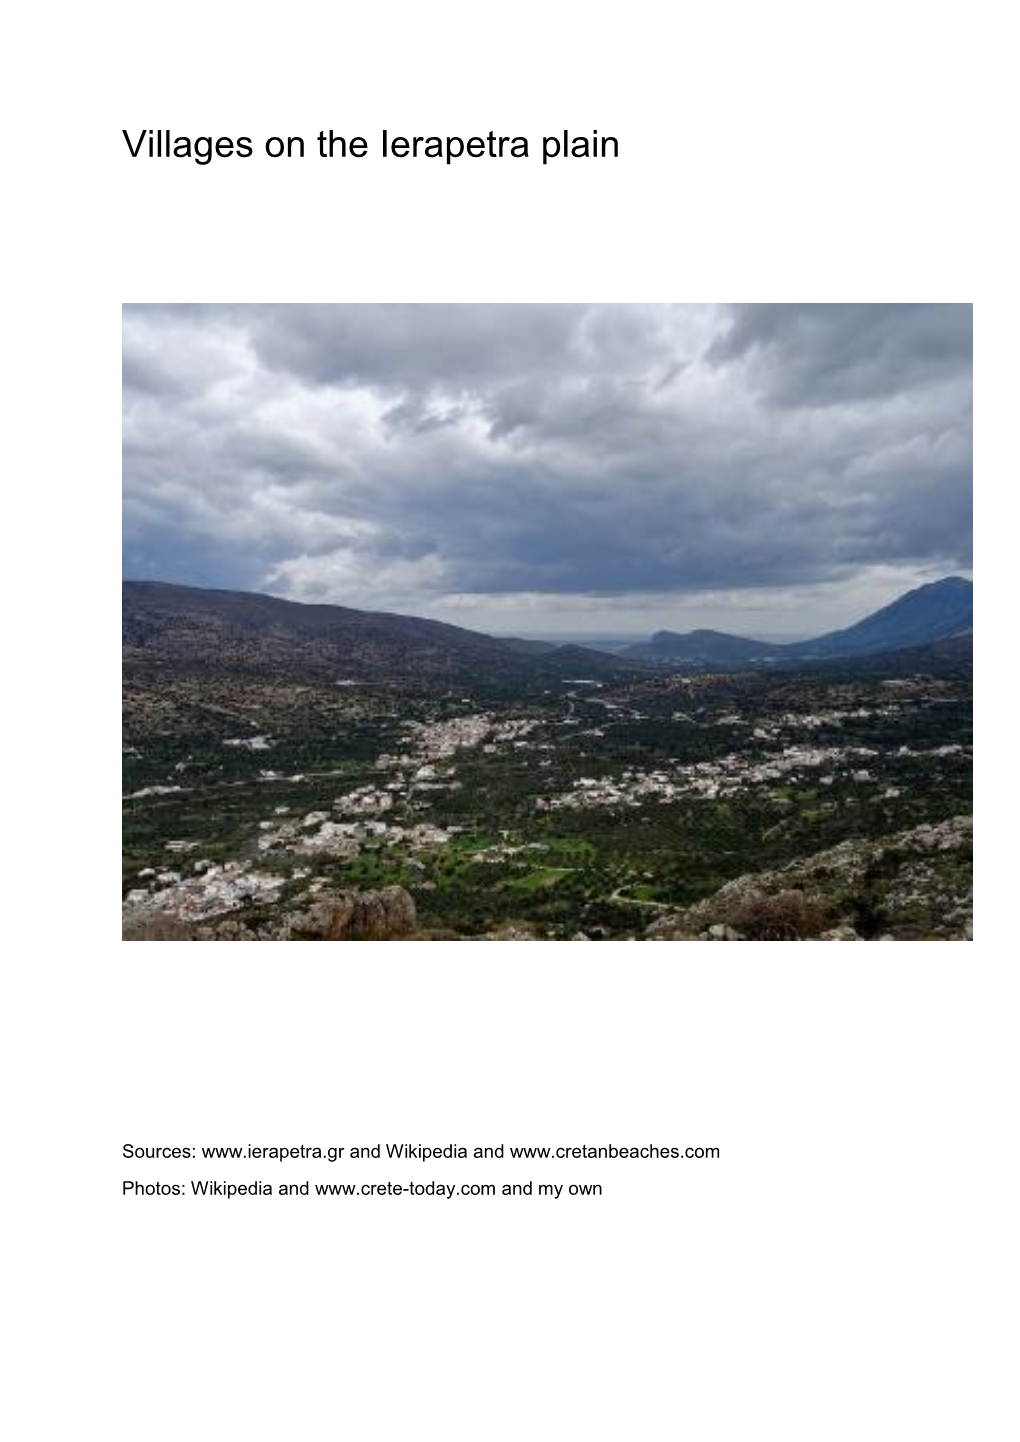 Villages on the Ierapetra Plain